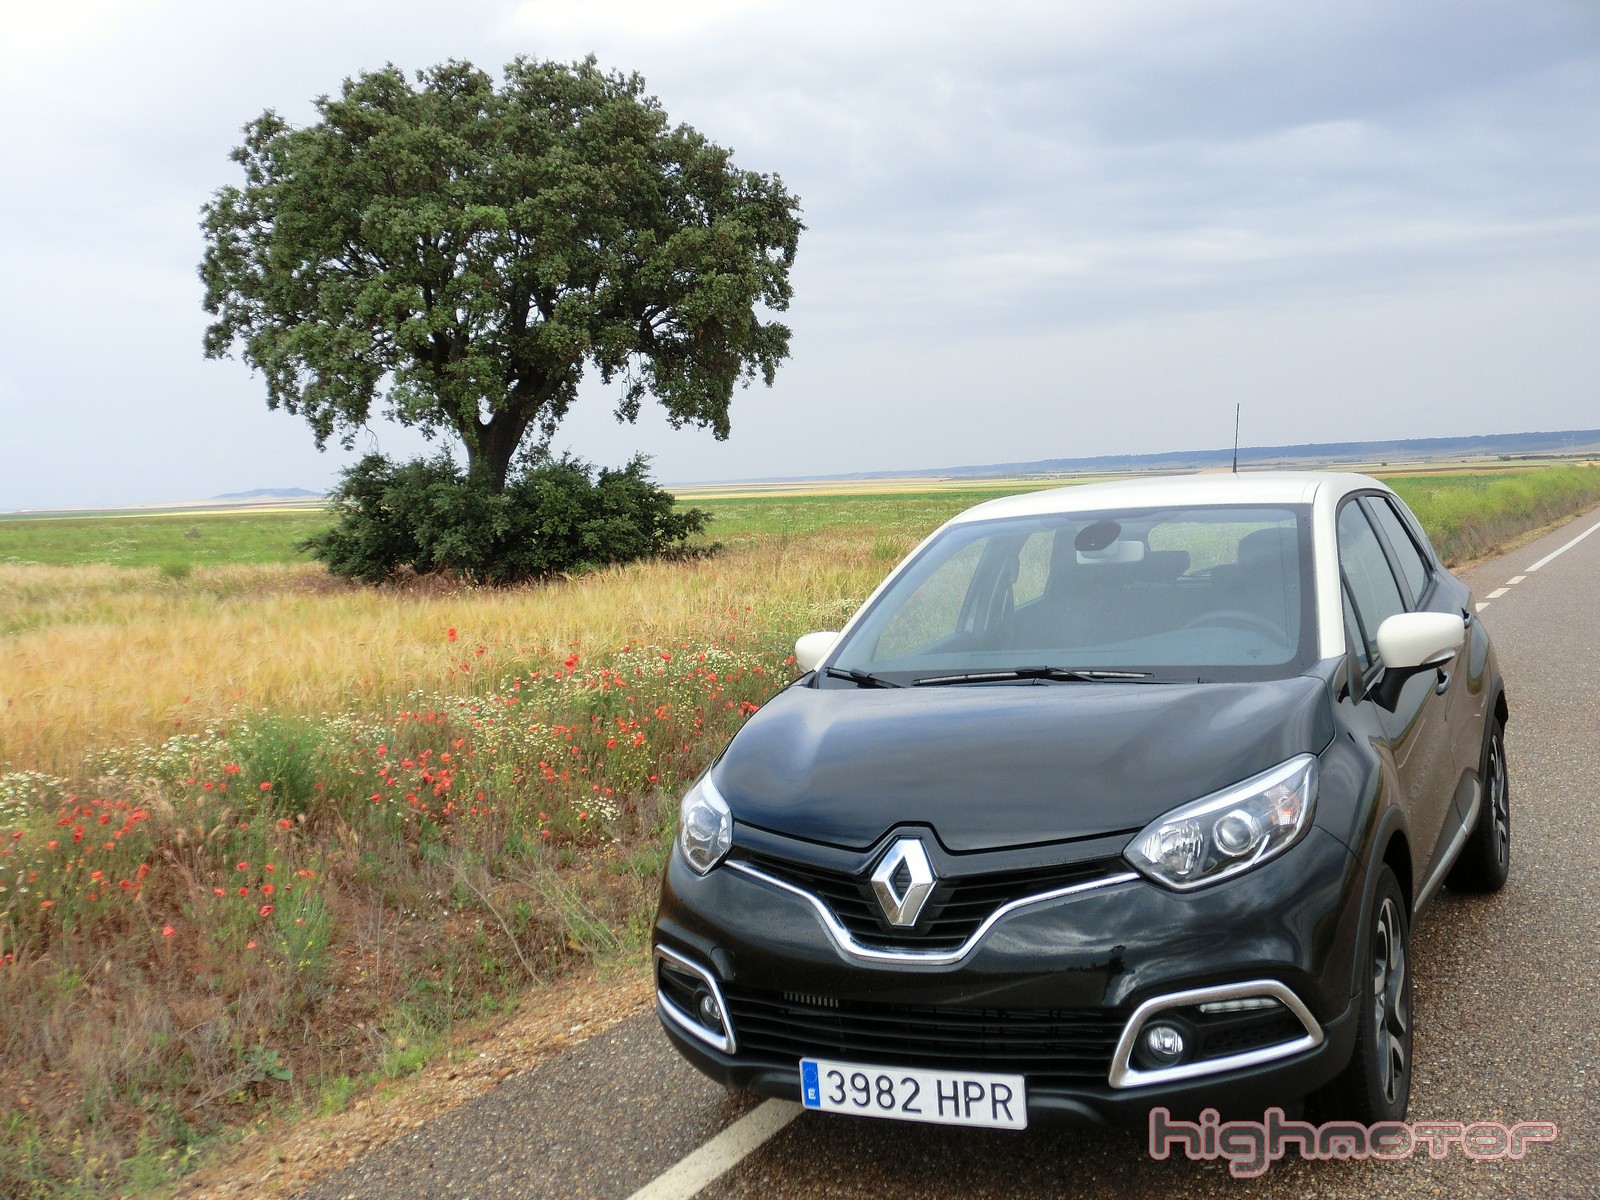 Renault Captur 1.5 dCi 90 CV, prueba (Equipamiento, precio y valoración)